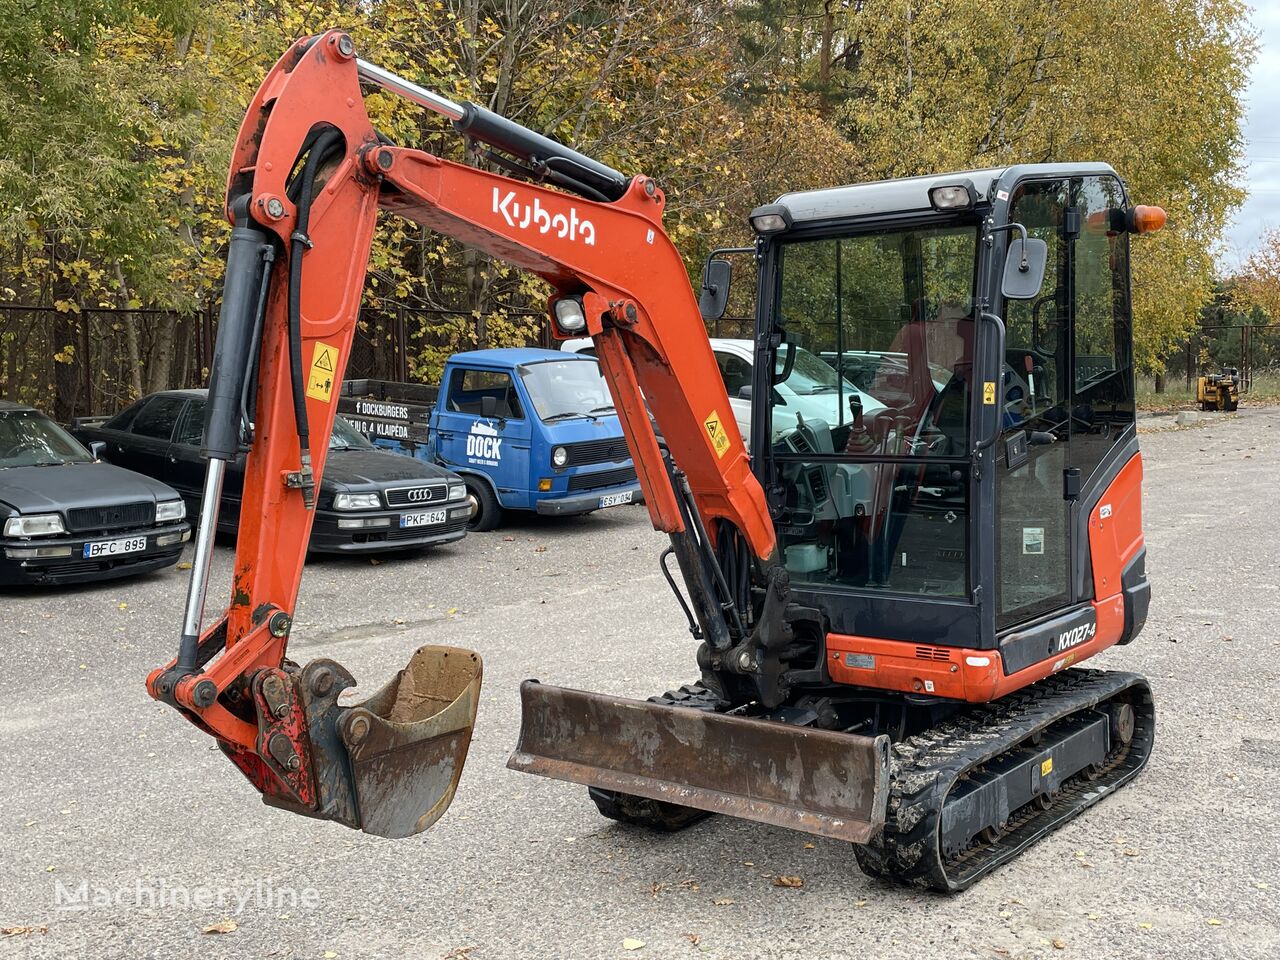 Kubota KX027-4 mini excavator